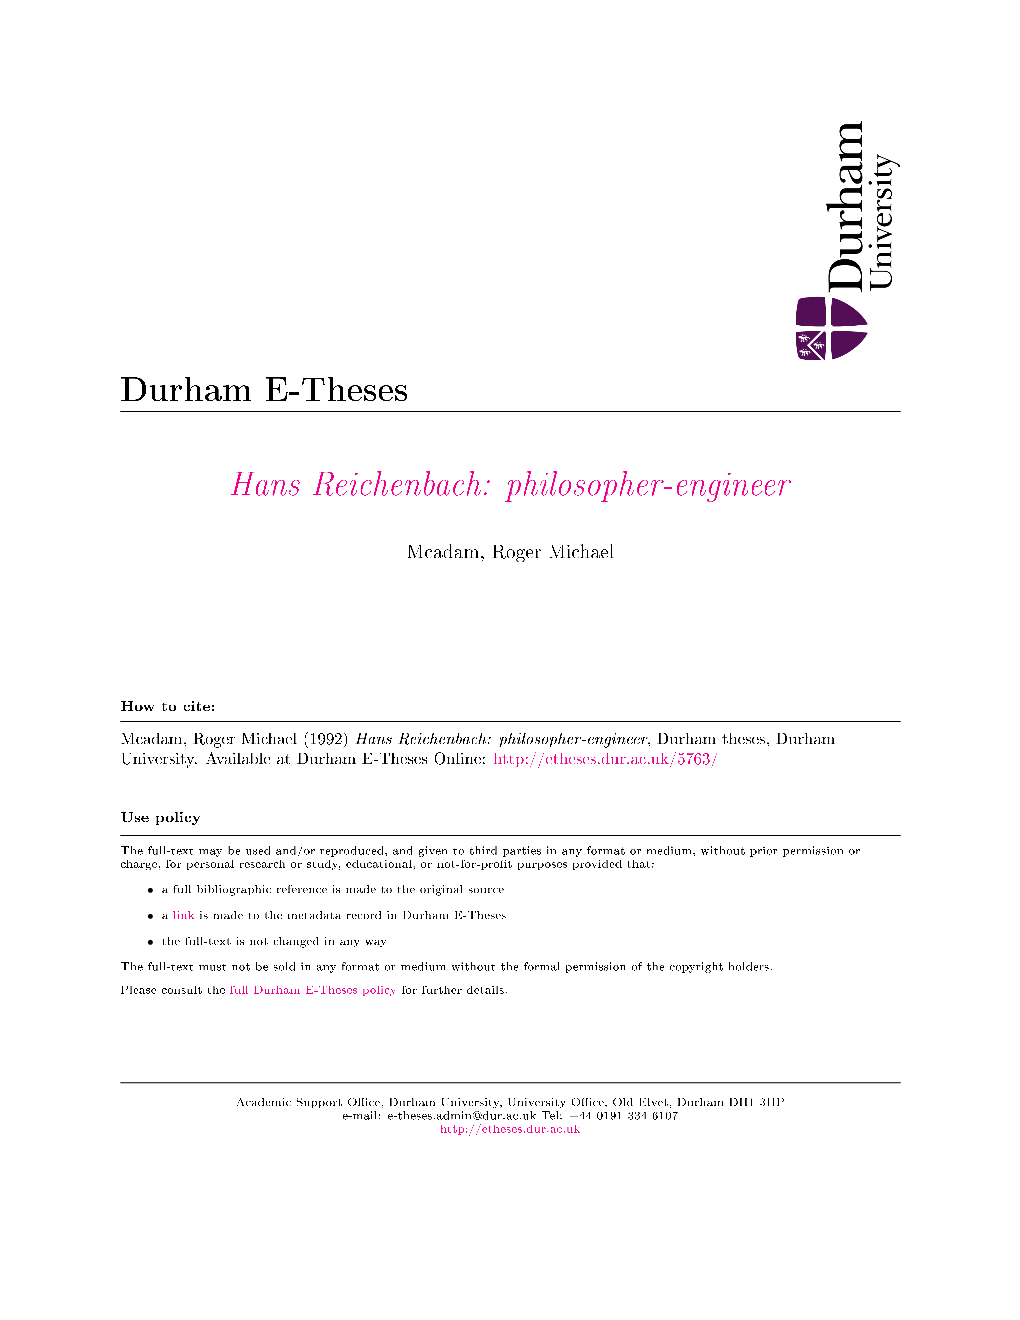 Hans Reichenbach: Philosopher-Engineer